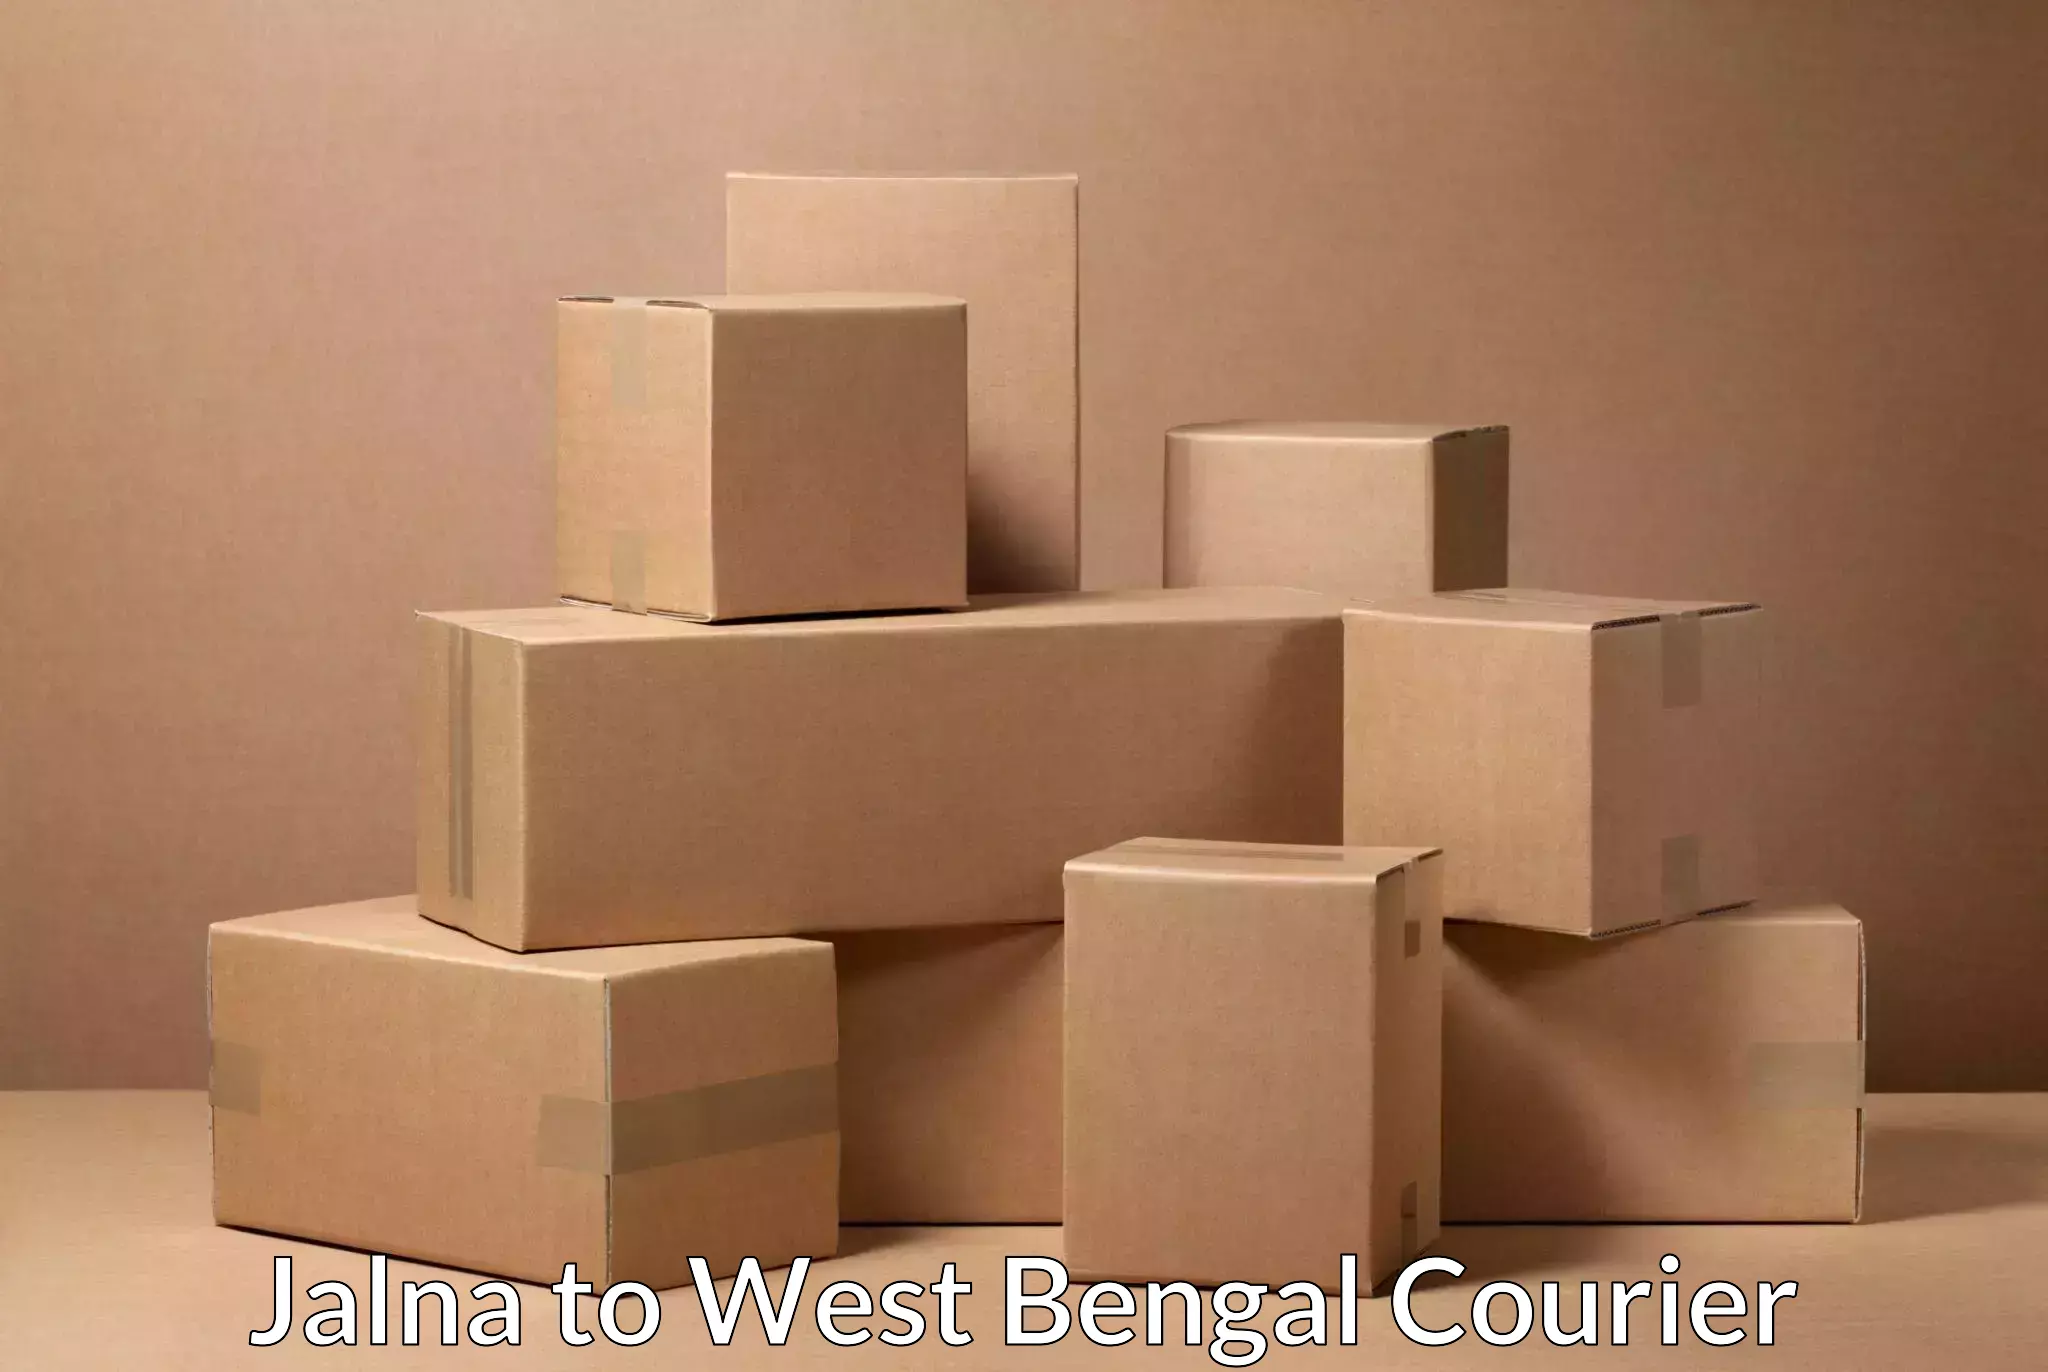 Efficient parcel transport Jalna to Kolkata Port